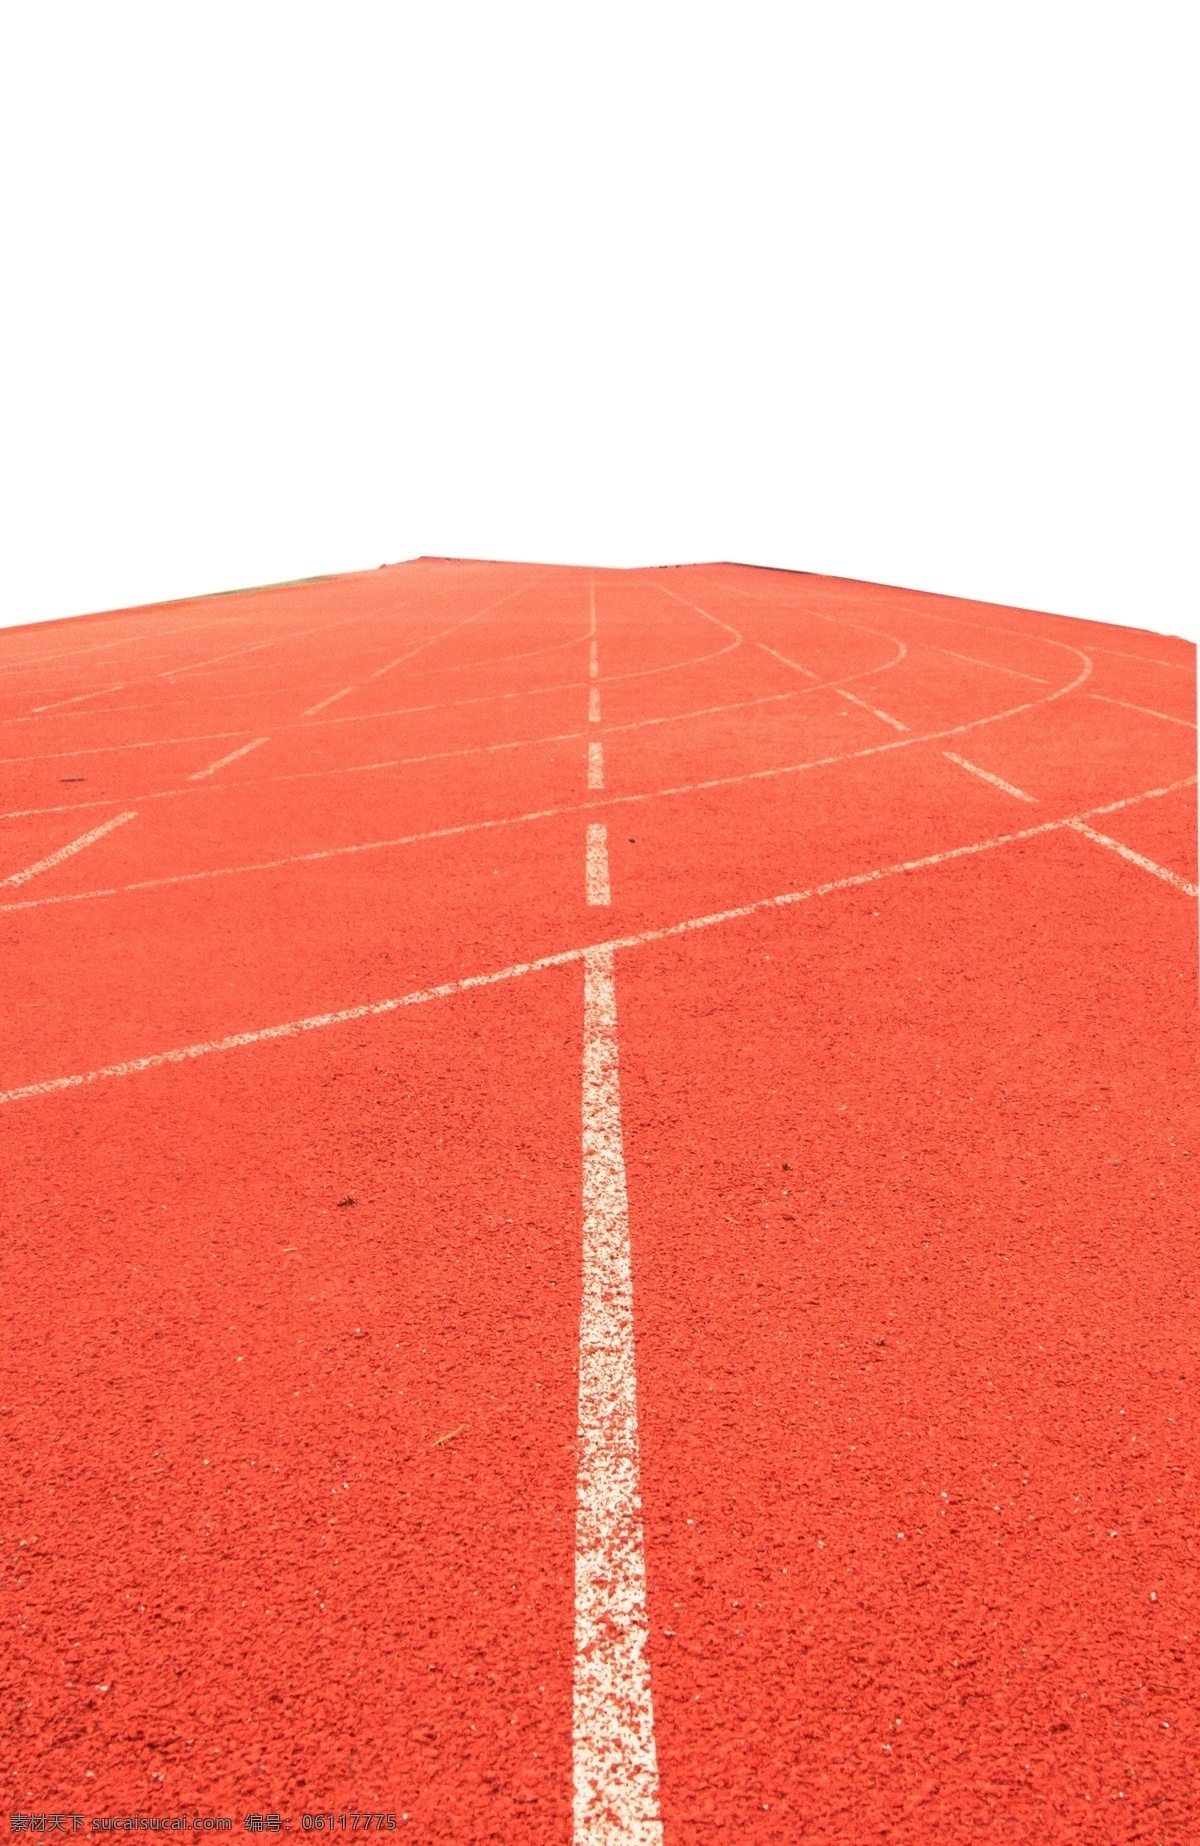 红色 橡胶 跑道 操场 学校 活动场 室外体育 弹性面层 体育锻炼 运动会 学生 橡胶颗粒 平整 硬度高